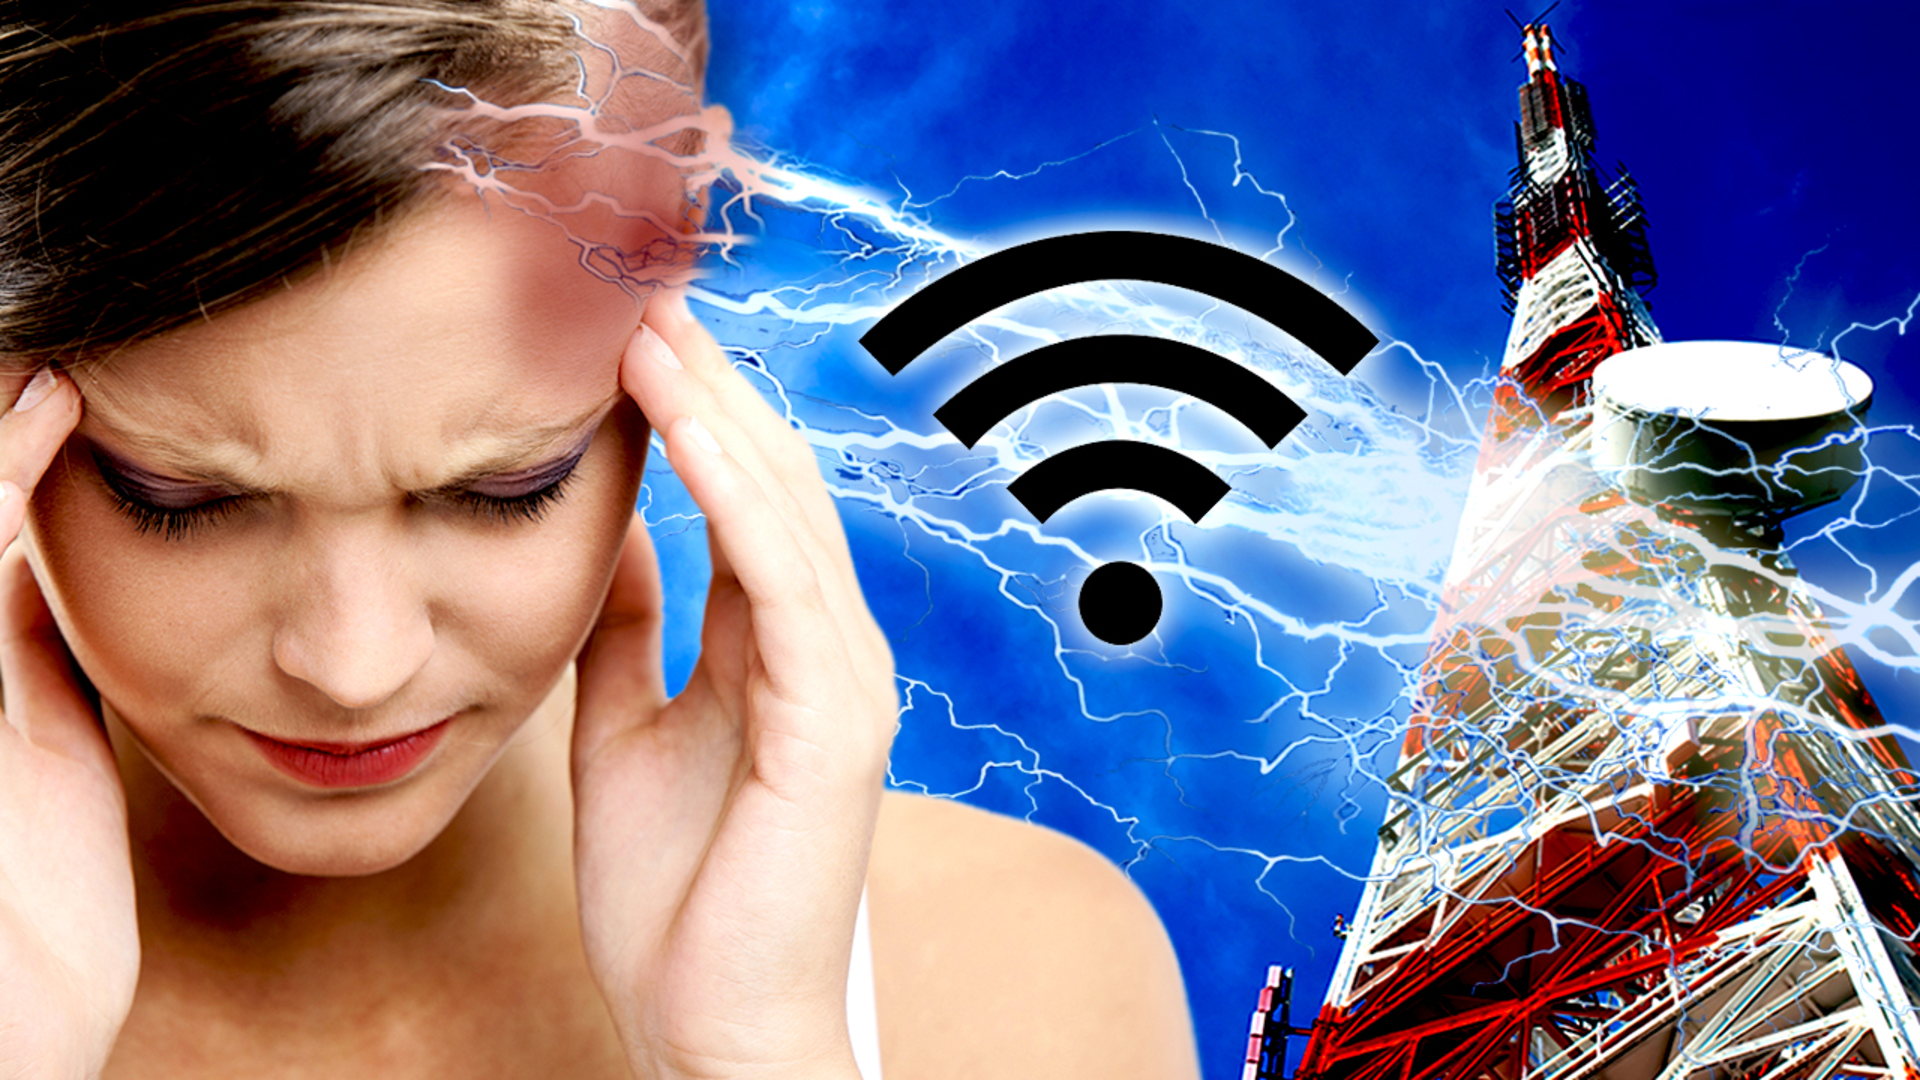 Ničí nám wi-fi zdraví?